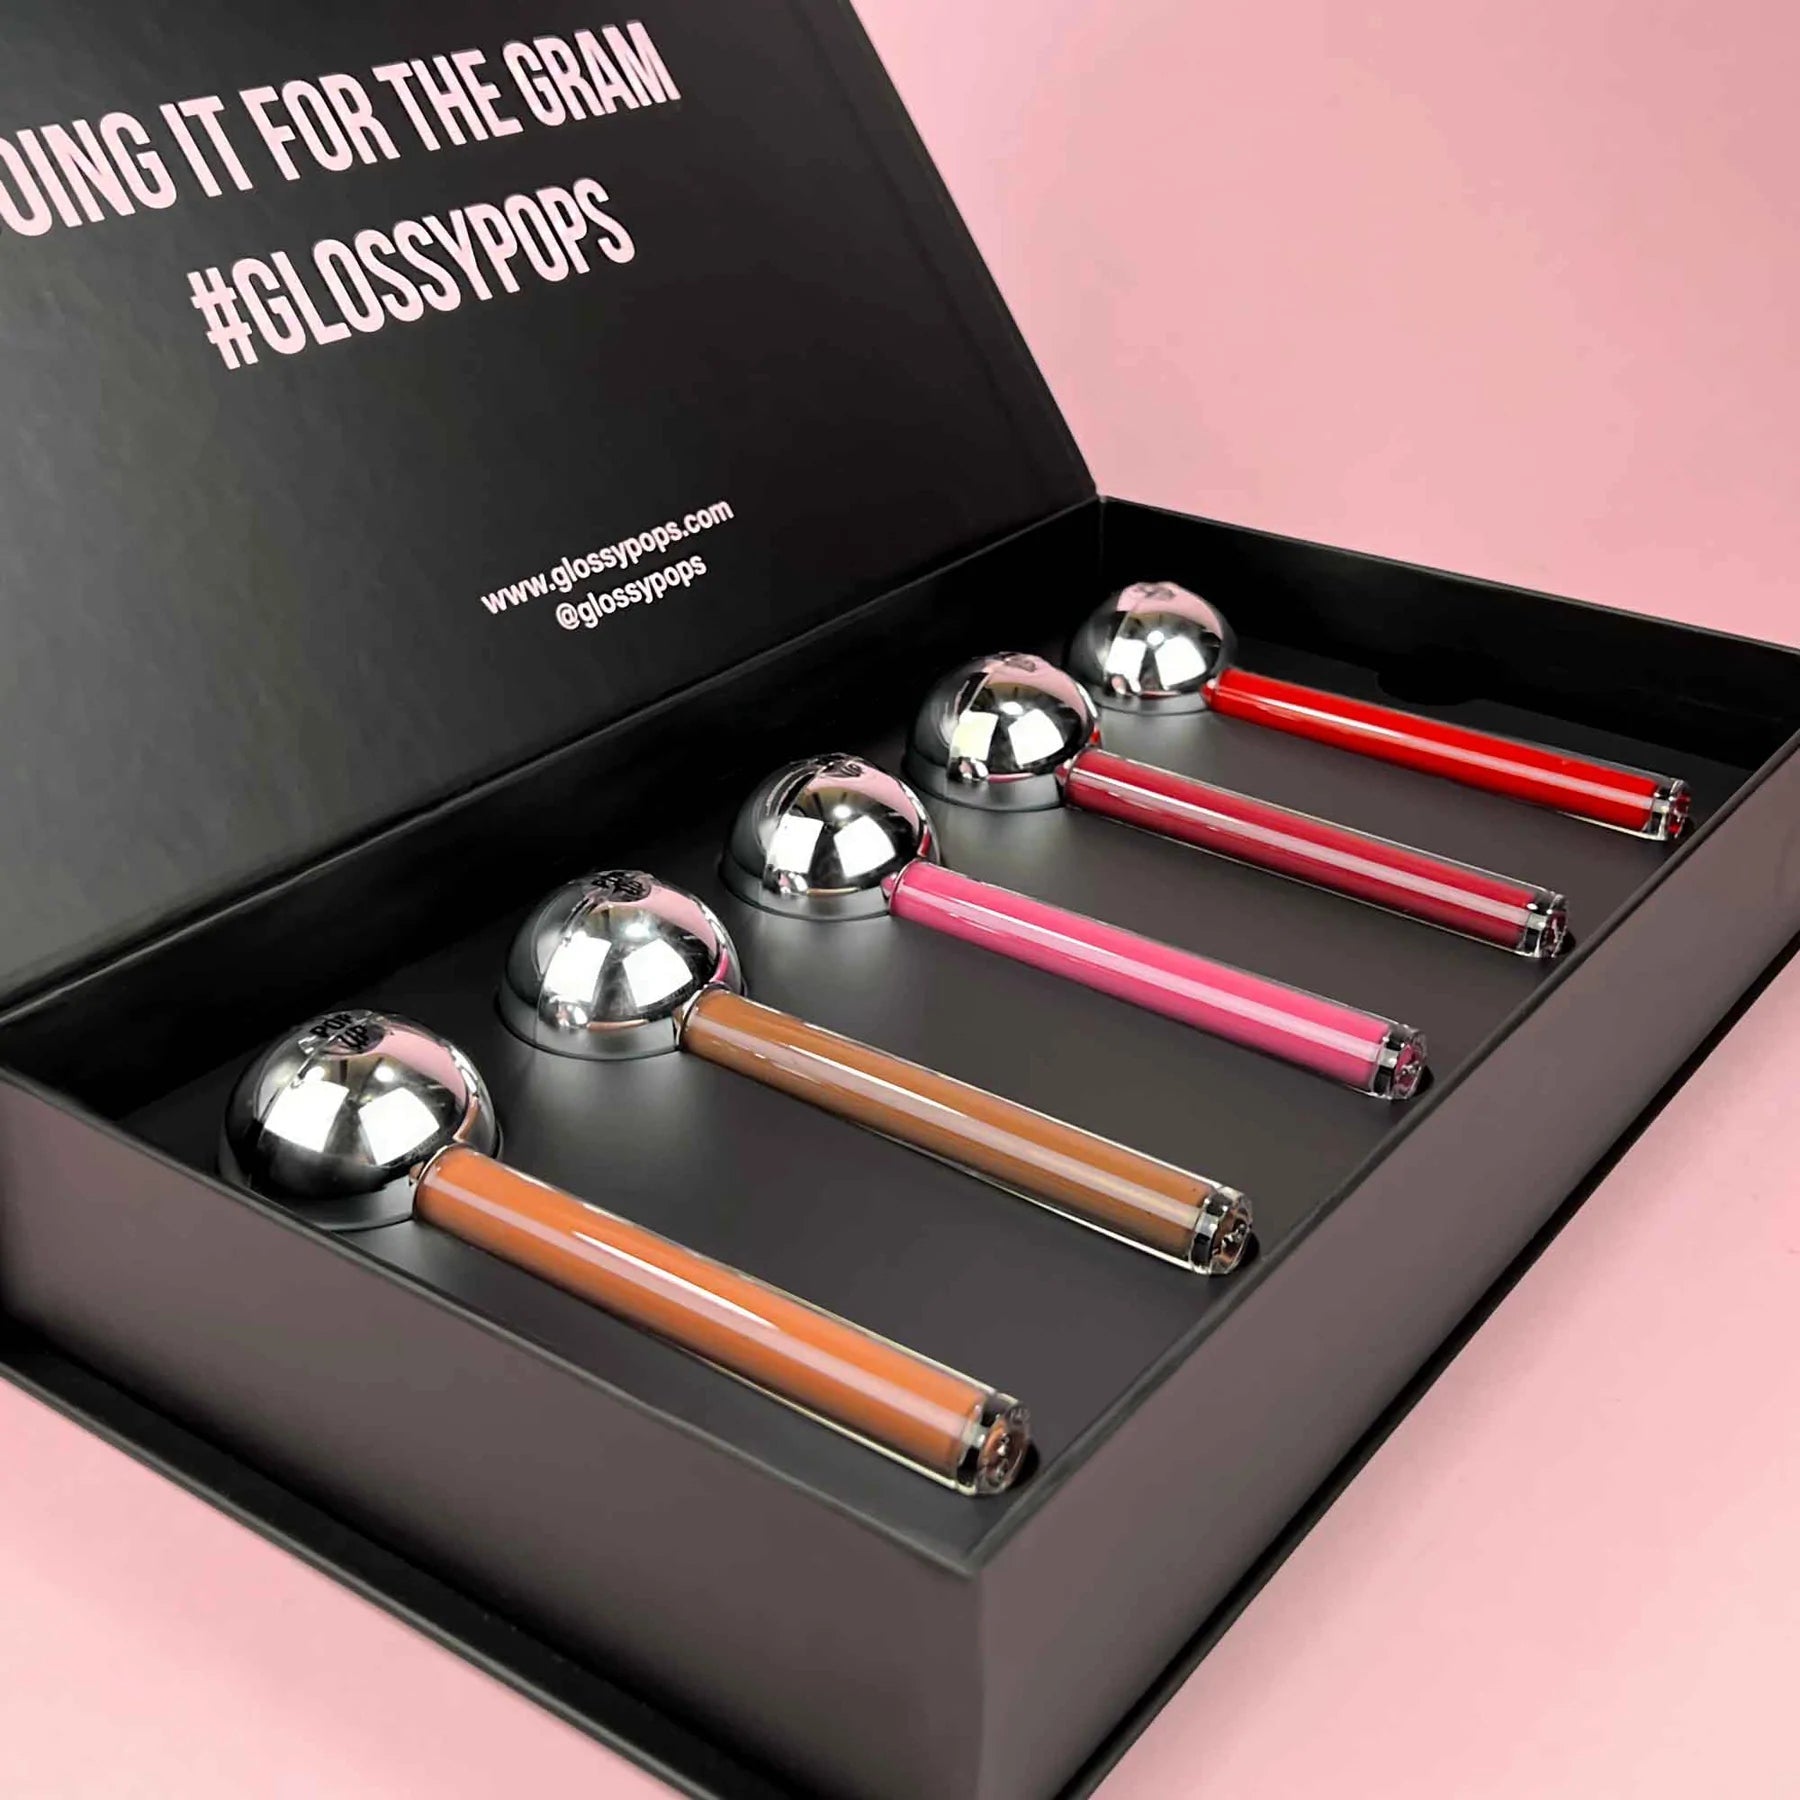 Shop Glossy Pops Jumbo Velvet Stain Gloss Set - Premium Lip Gloss from Glossy Pops Online now at Spoiled Brat 